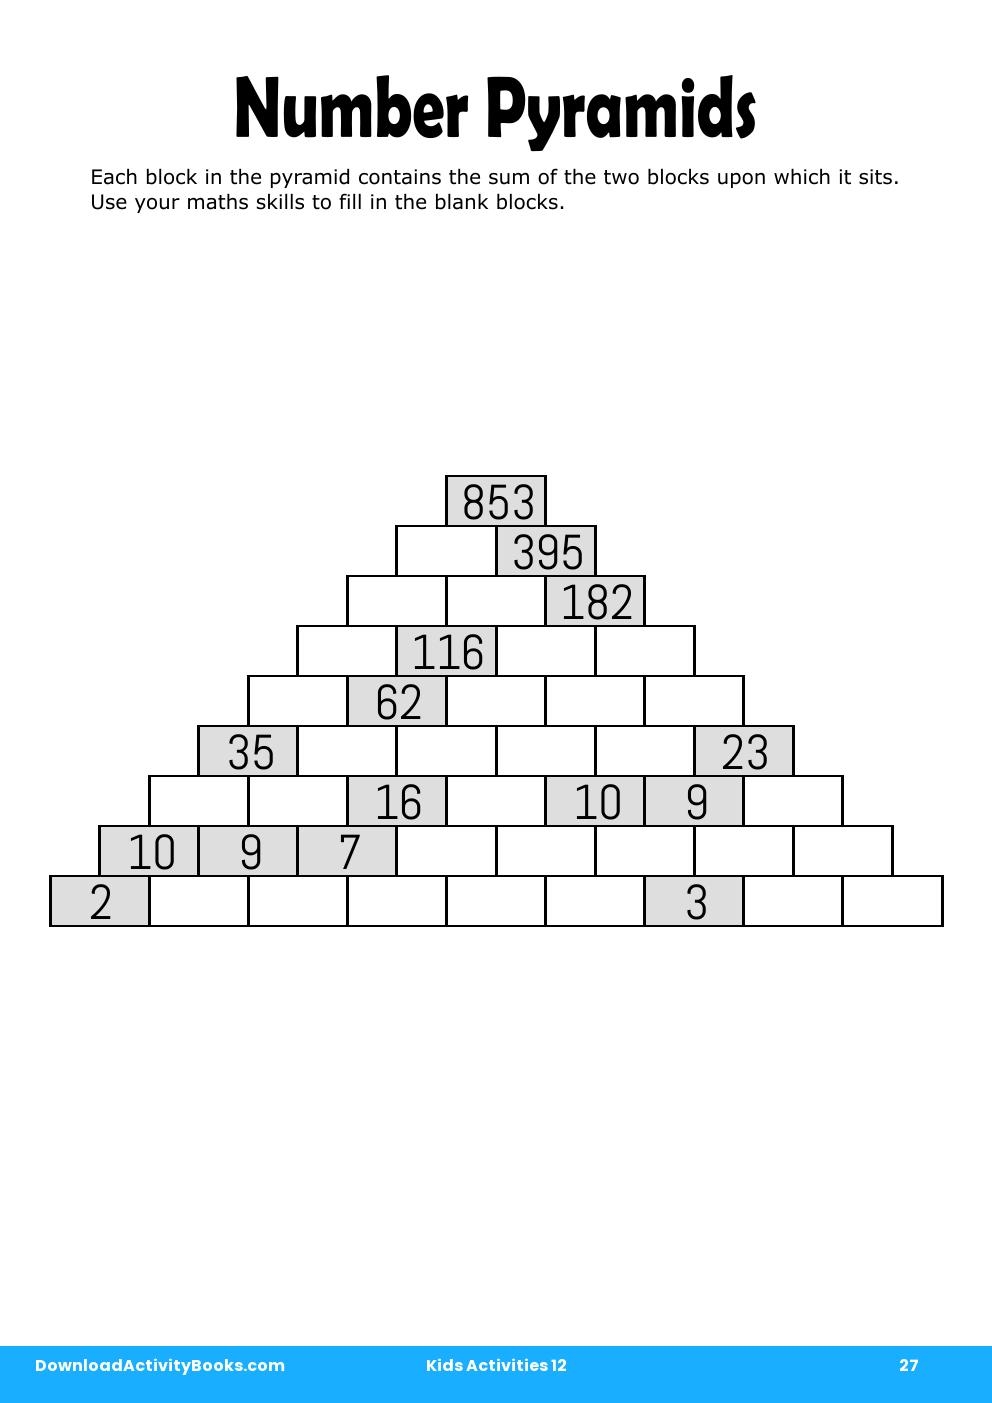 Number Pyramids in Kids Activities 12